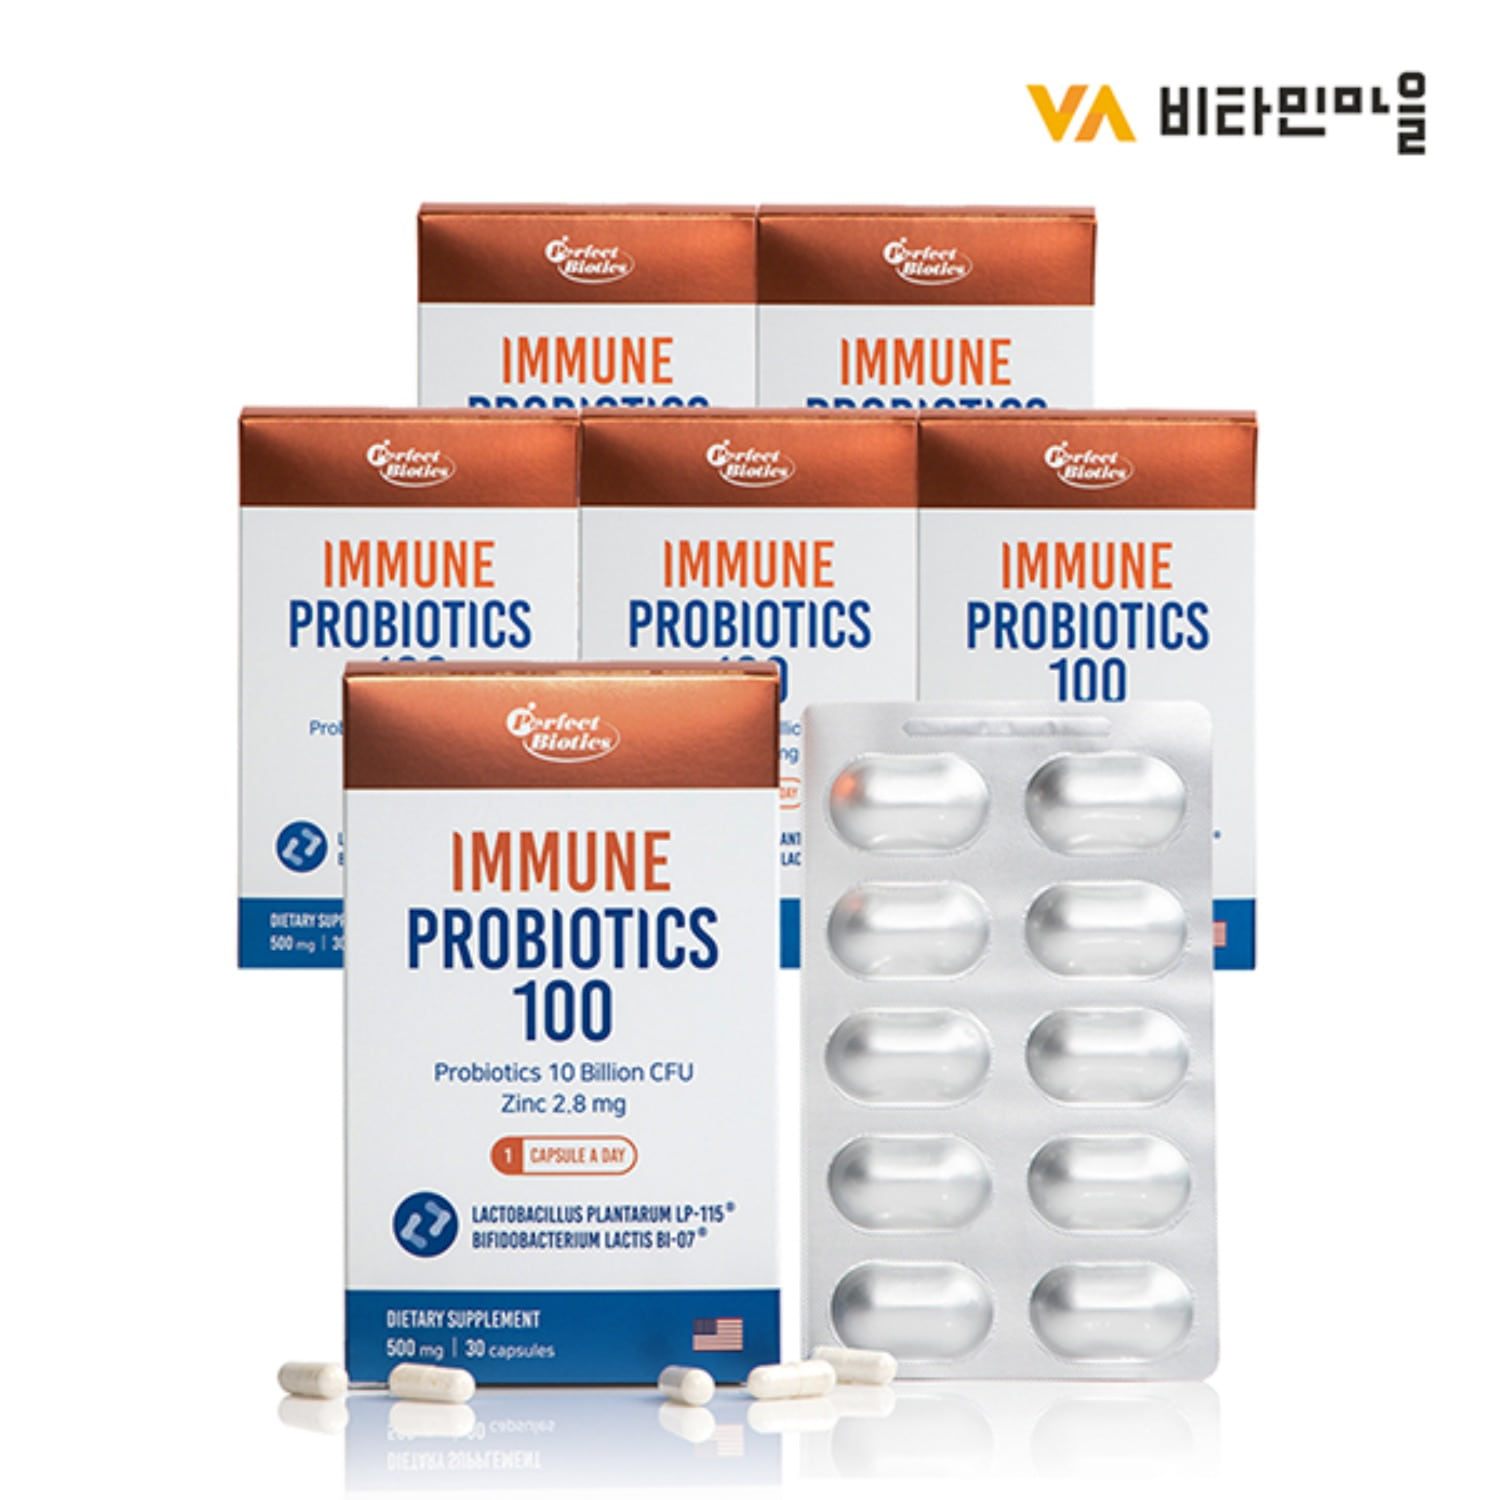 비타민마을 퍼펙트바이오틱스 다니스코 특허유산균 100%함유 이뮨 프로바이오틱스 100억보장 유산균 30캡슐 1개월분 x 6박스